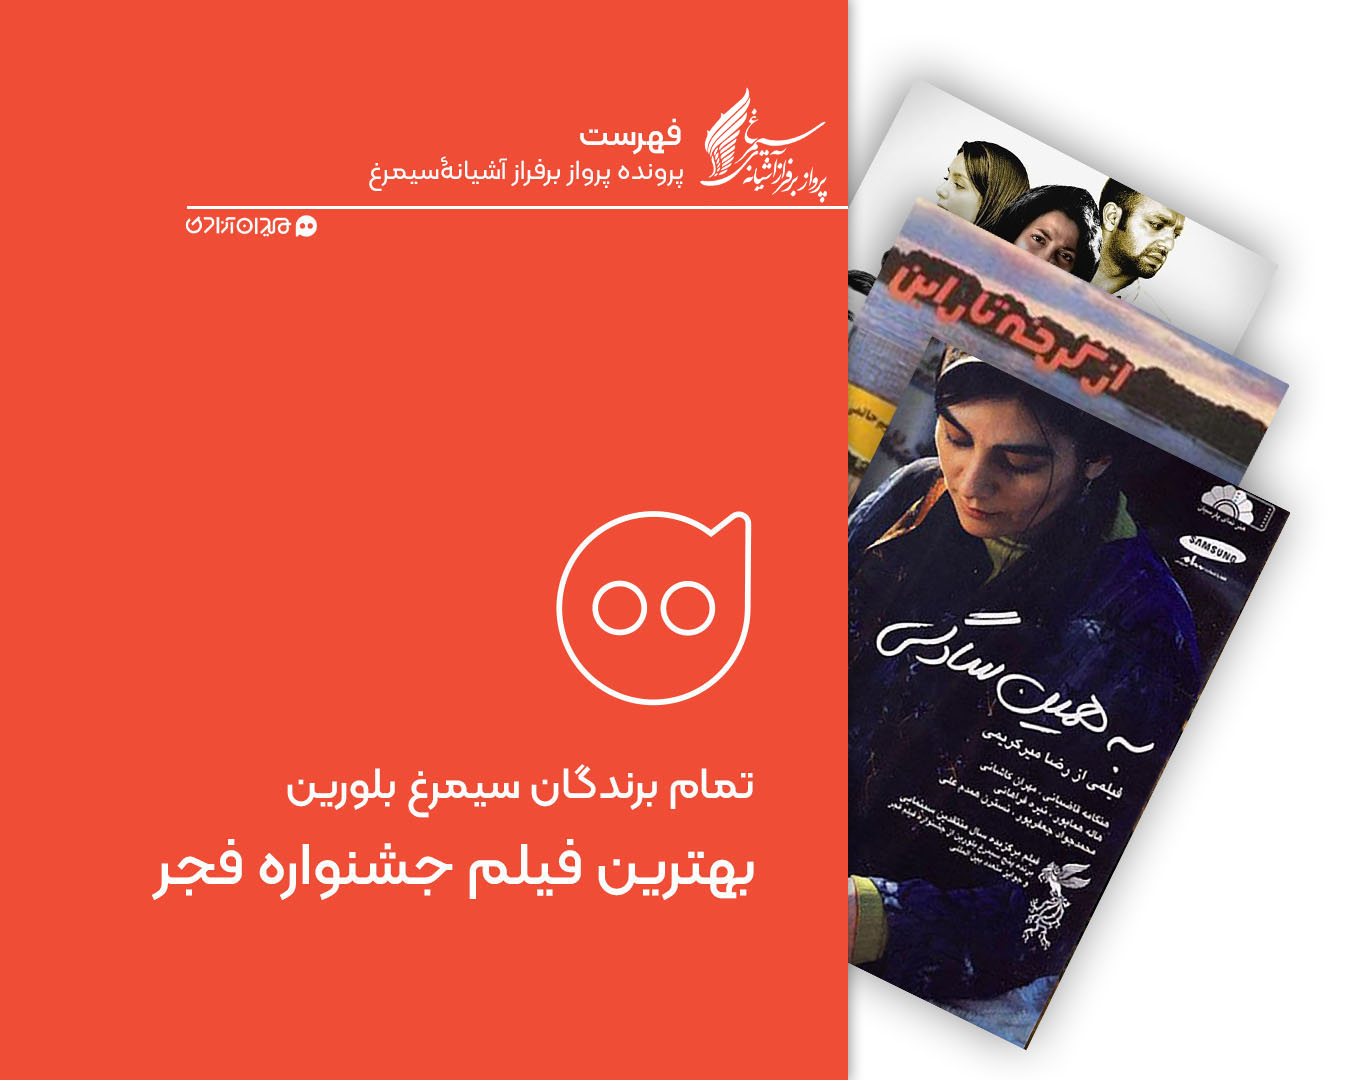 فهرست: تمام برندگان سیمرغ بلورین بهترین فیلم جشنواره فیلم فجر از ابتدا تاکنون